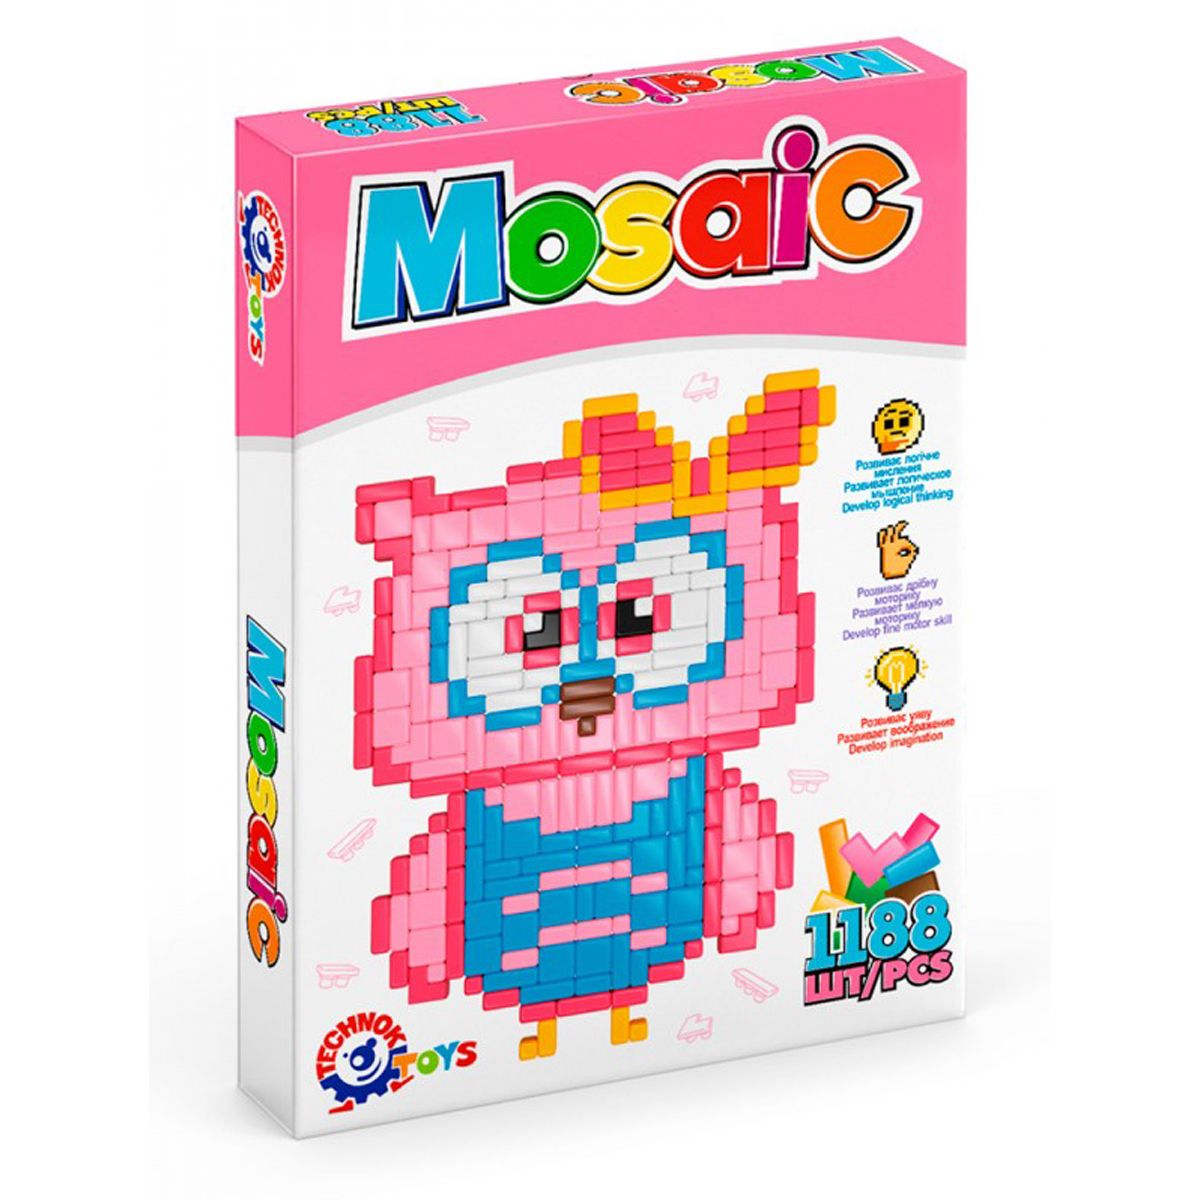 Игровой набор "Мозаика", 1188 дет